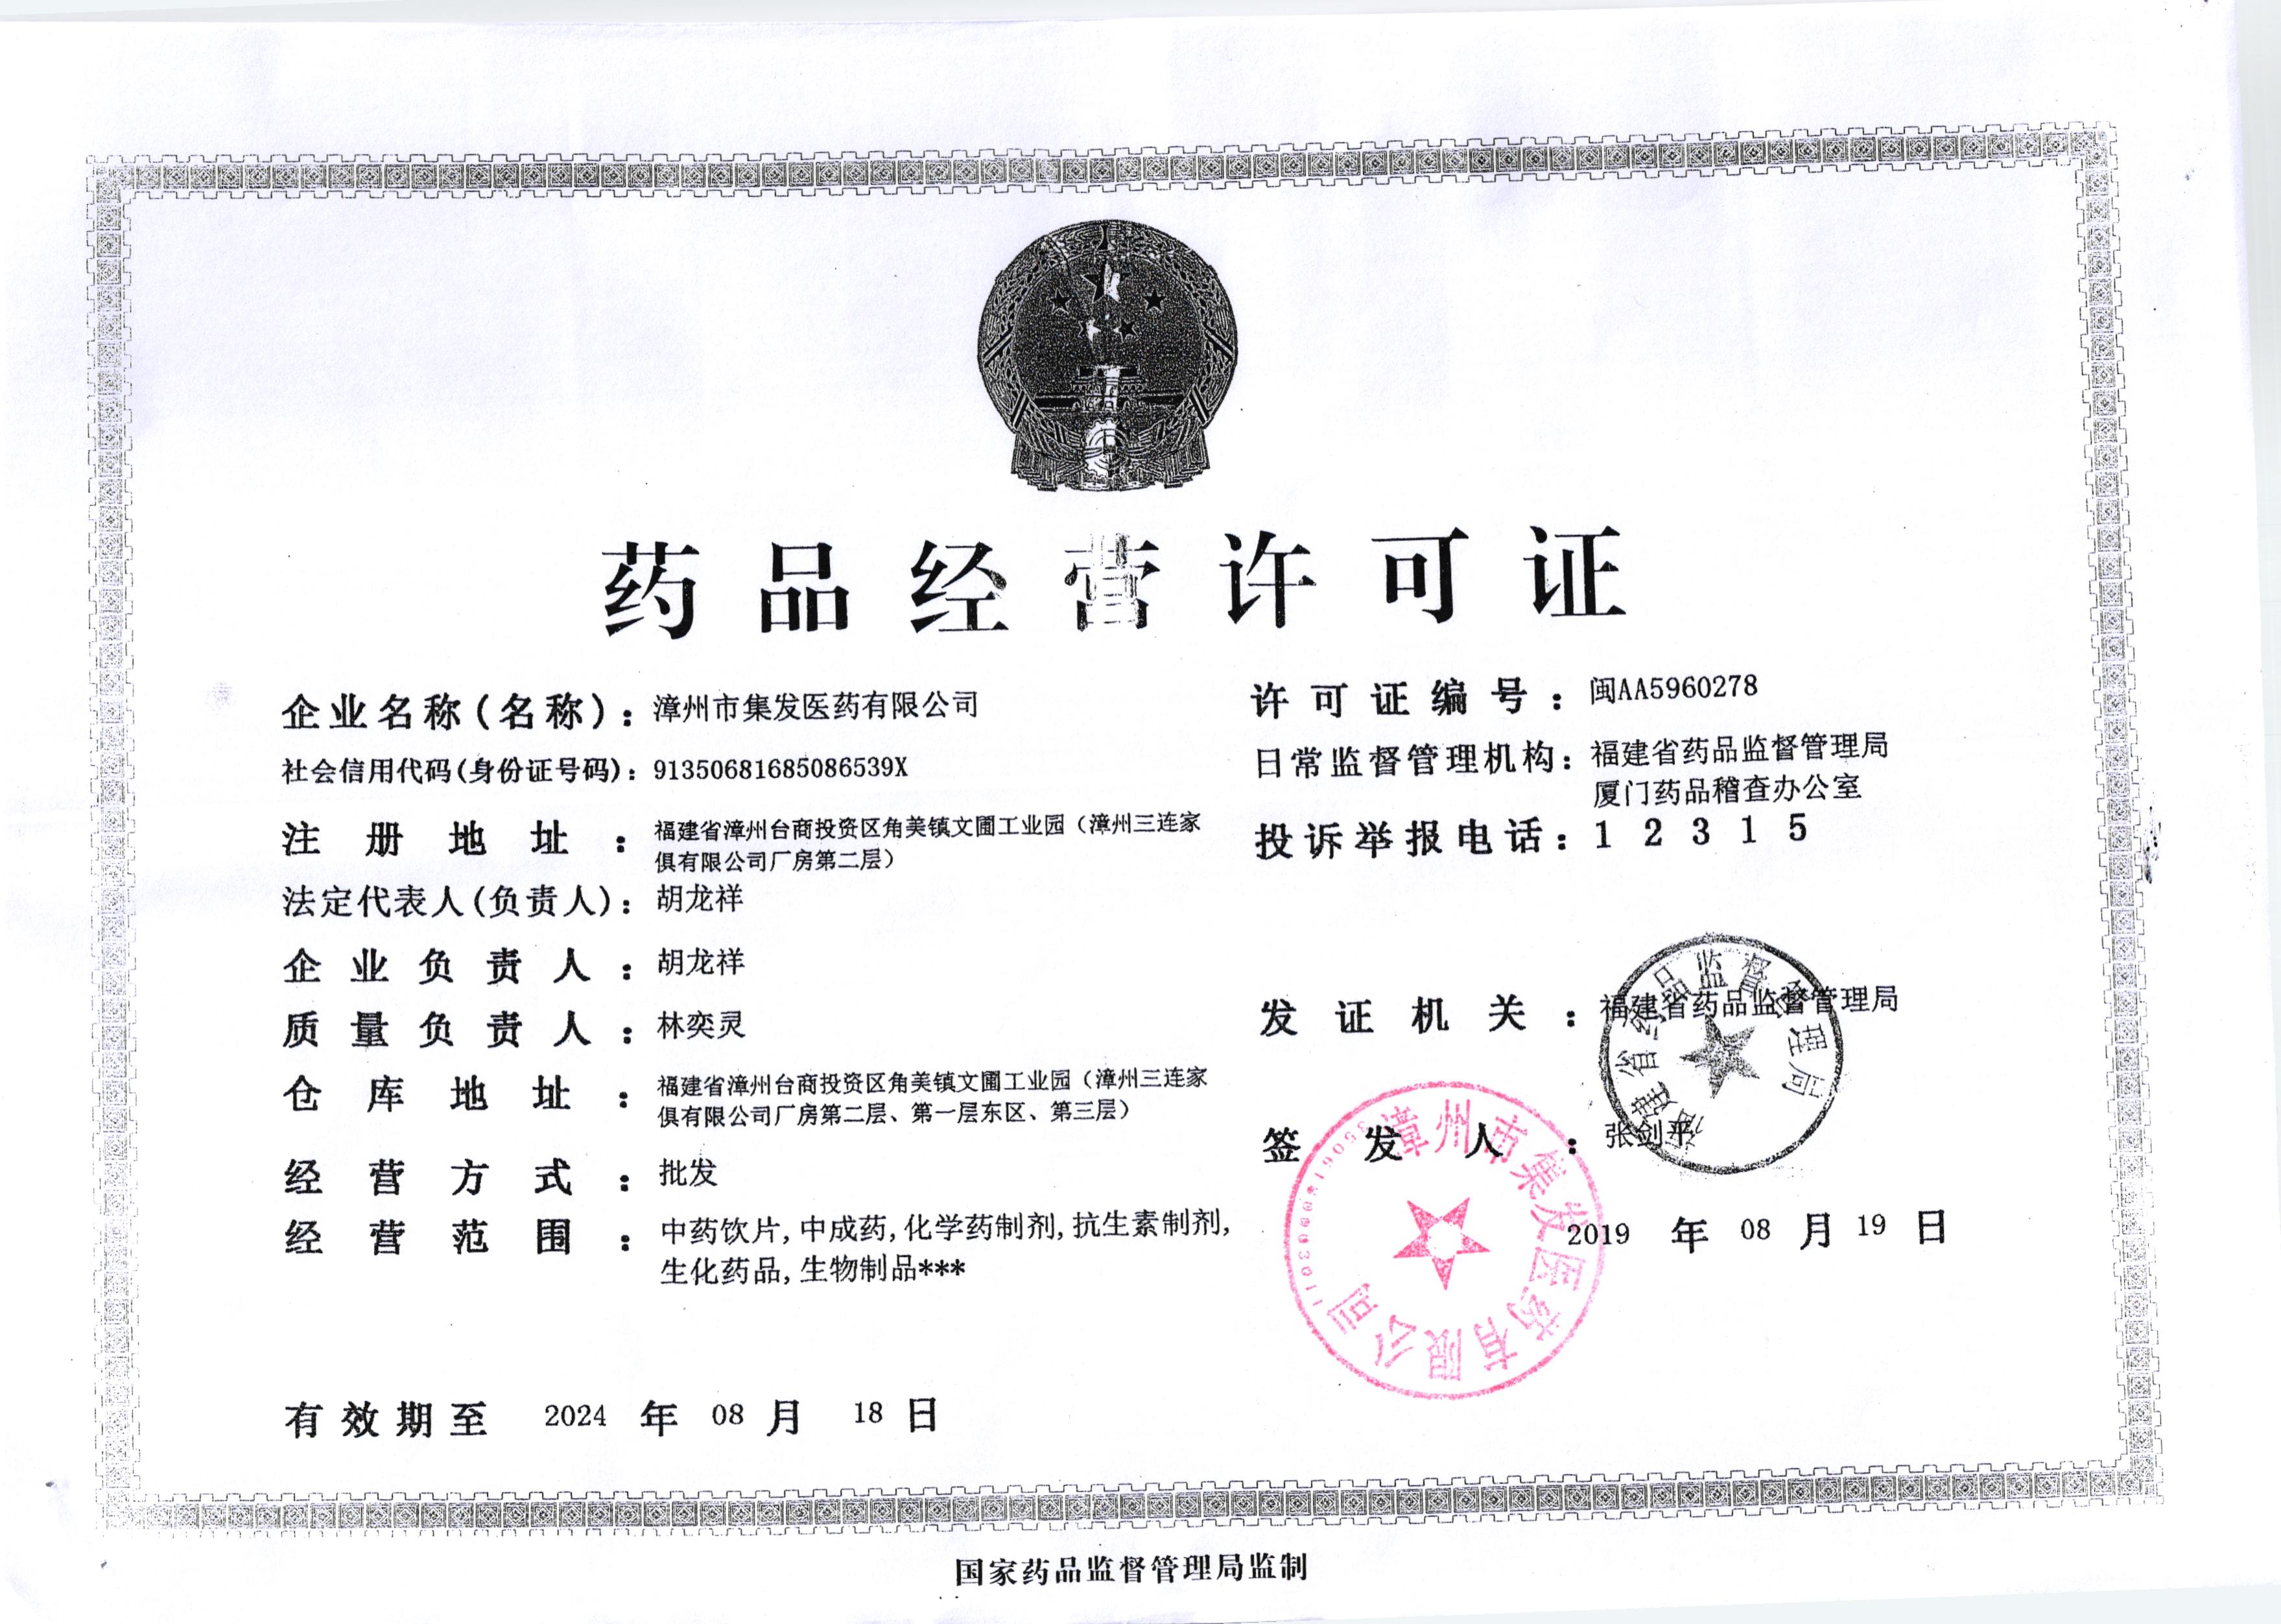 药品经营许可证证件编码:闽aa5960278